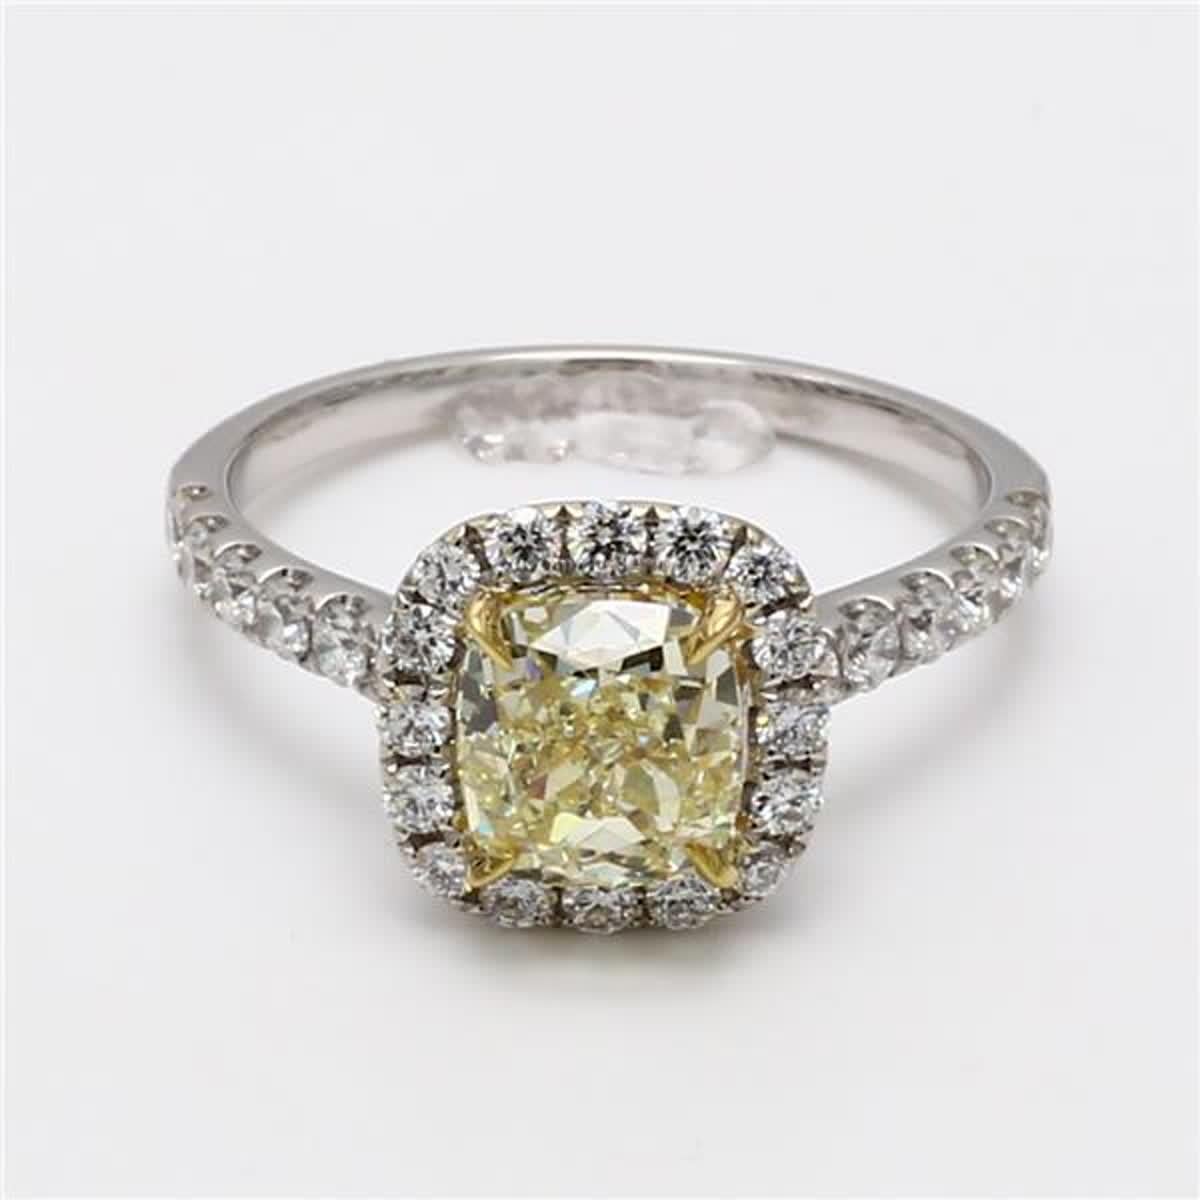 Der klassische GIA-zertifizierte Diamantring von RareGemWorld. Montiert in einer schönen Fassung aus 18 Karat Gelb- und Weißgold mit einem natürlichen gelben Diamanten im Kissenschliff. Der gelbe Diamant ist von runden weißen Naturdiamanten umgeben.